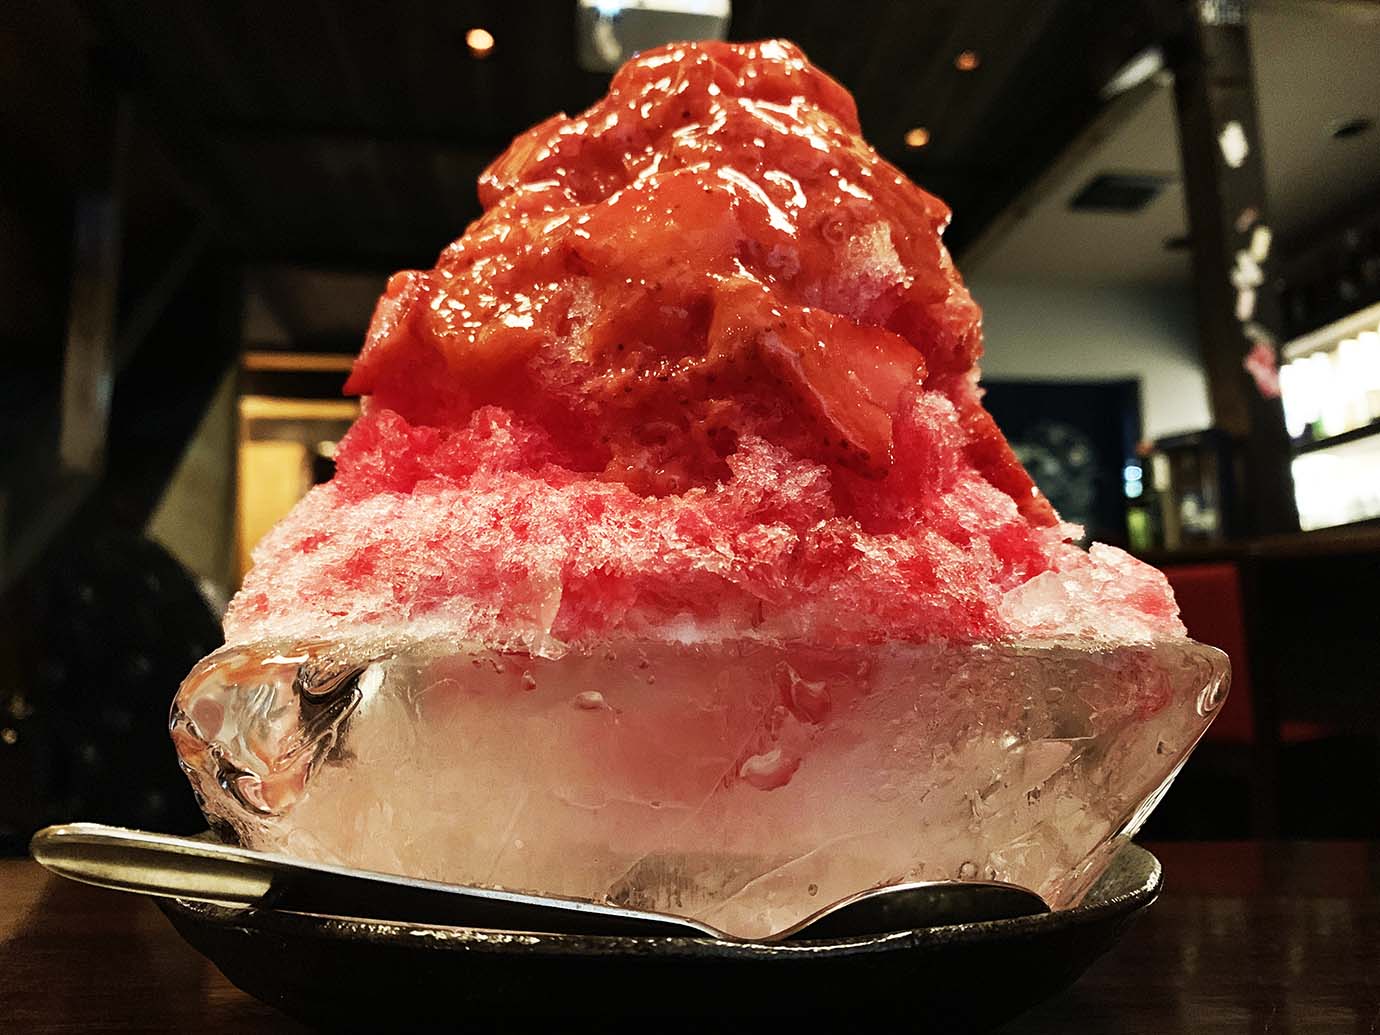 【真夏グルメ】氷に盛られた濃密な純和風かき氷の最高峰 / 京都ページワンの「生搾り苺かき氷」